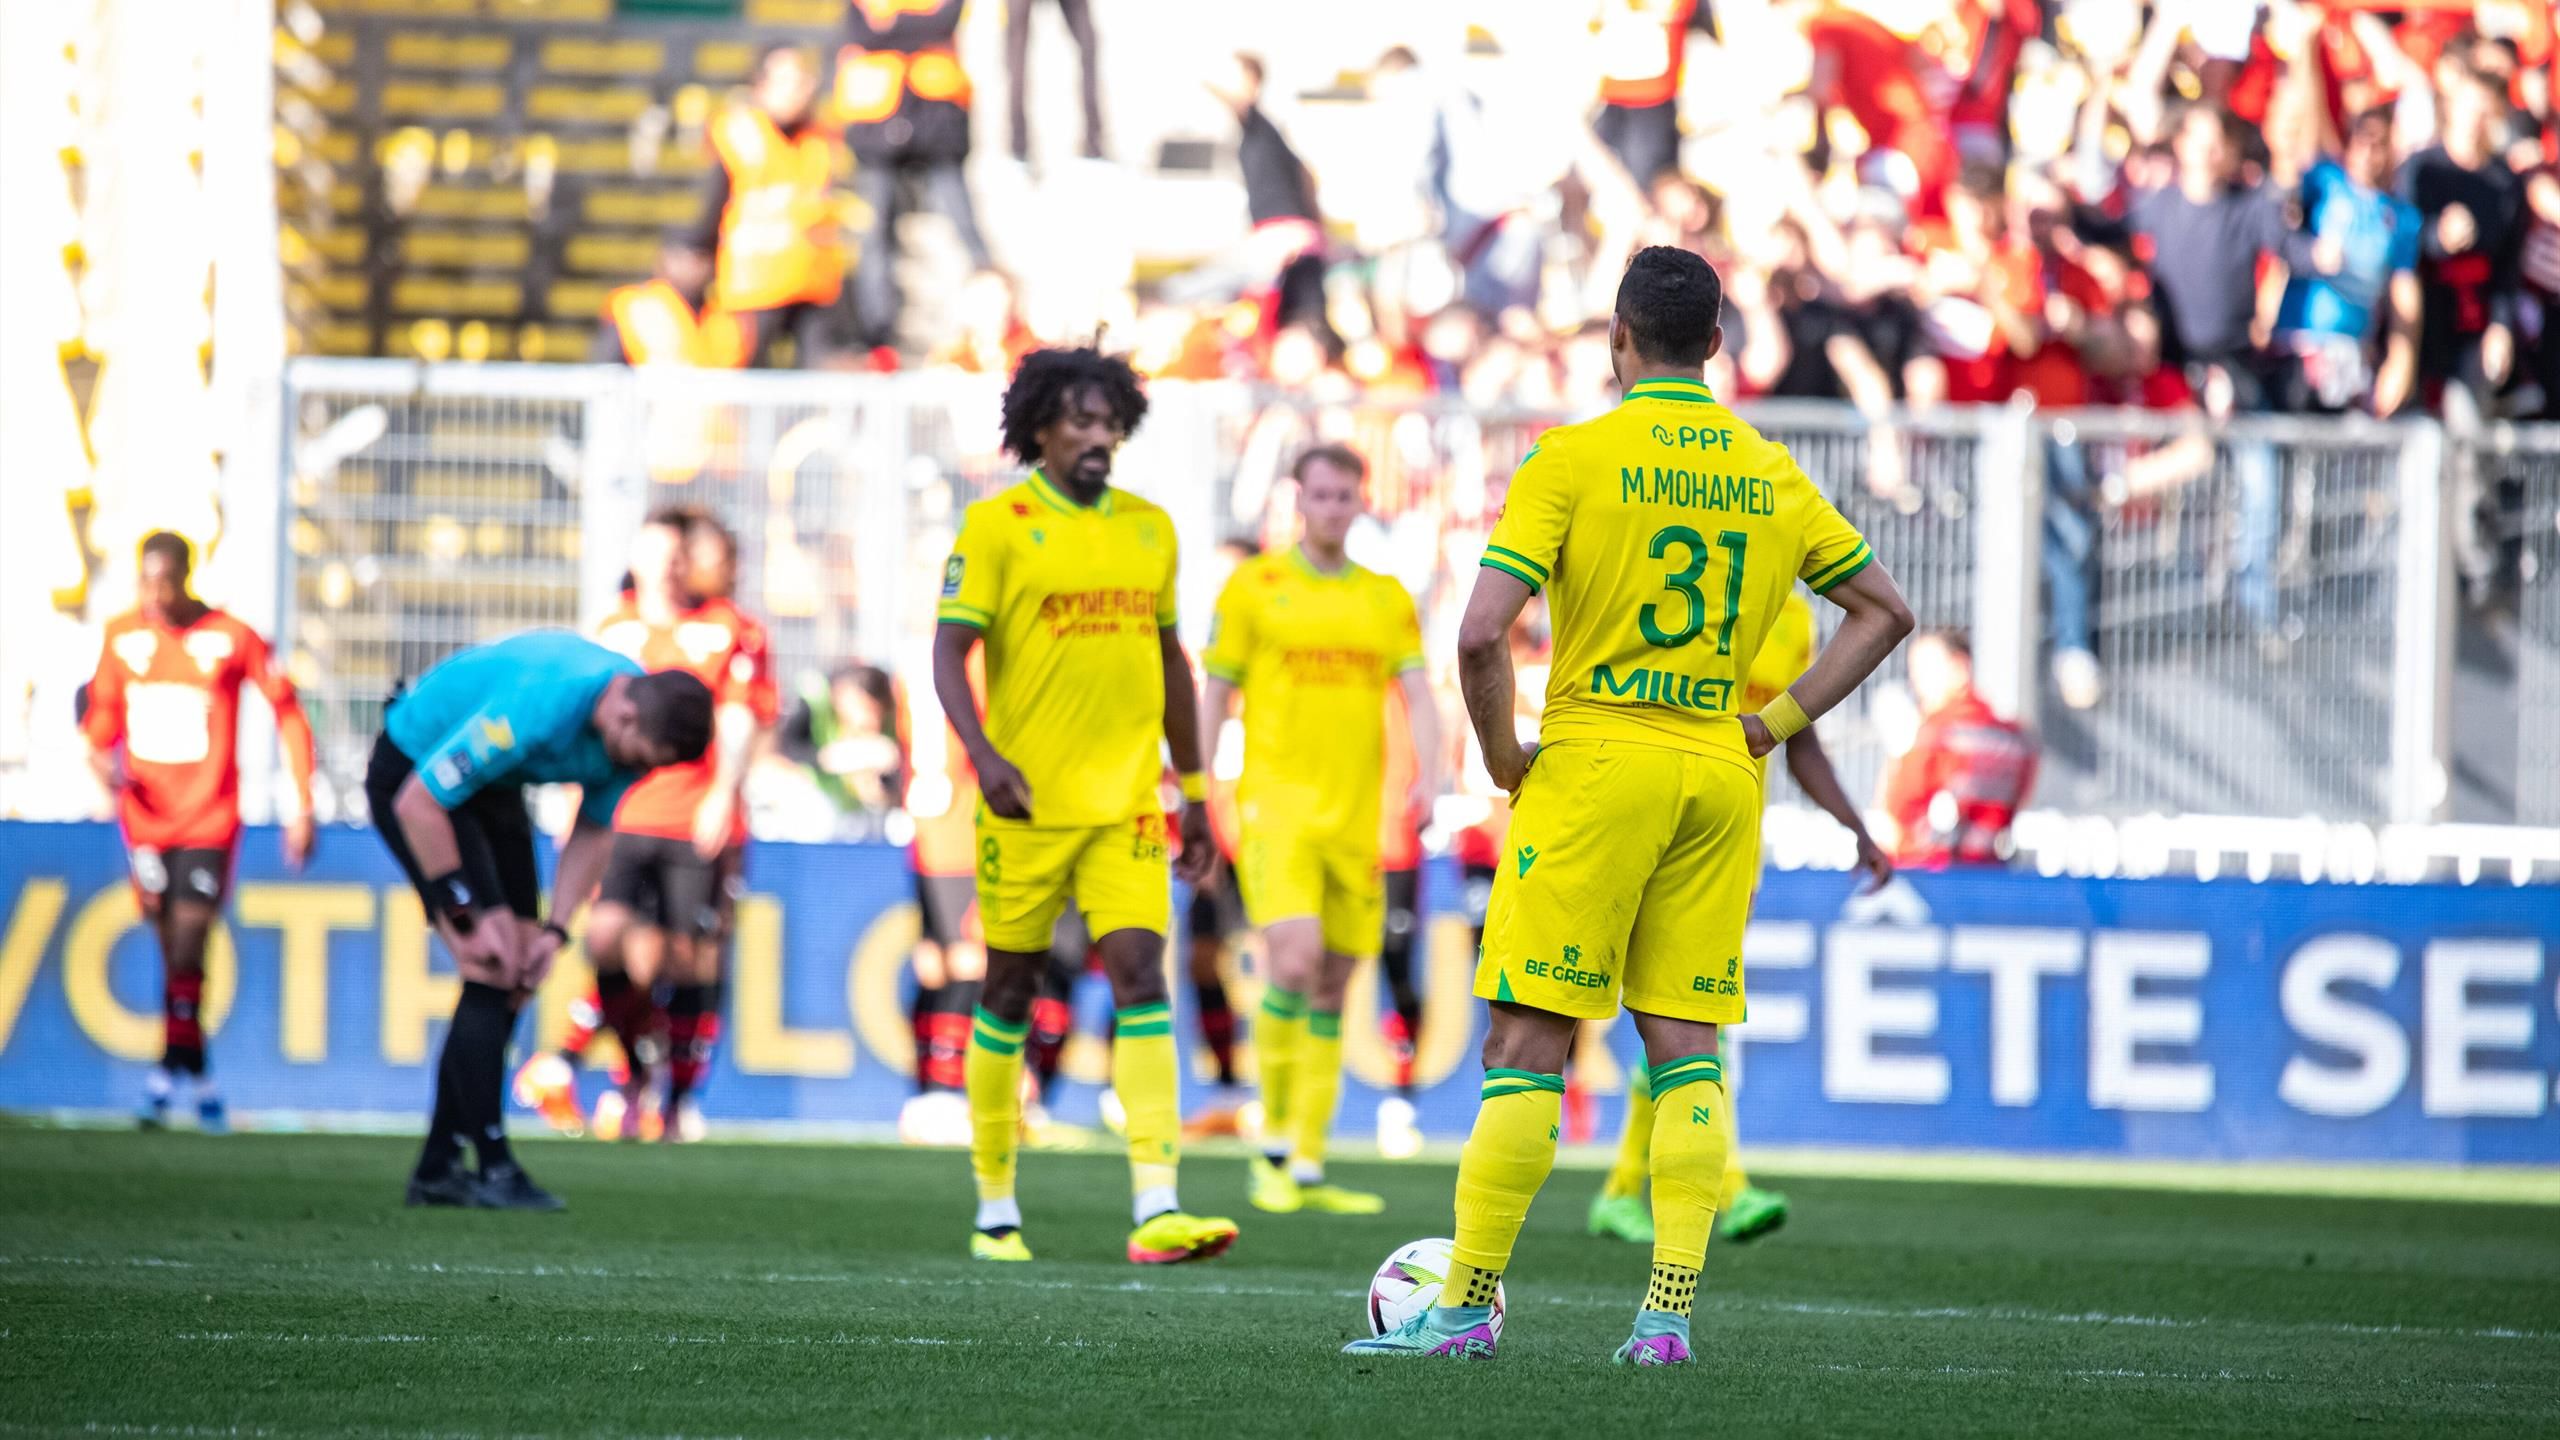 Ligue 1 - 30e journée : "Ce qu'on a fait, c'est de la merde" : Nantes, record terrible et coup de gueule retentissant thumbnail